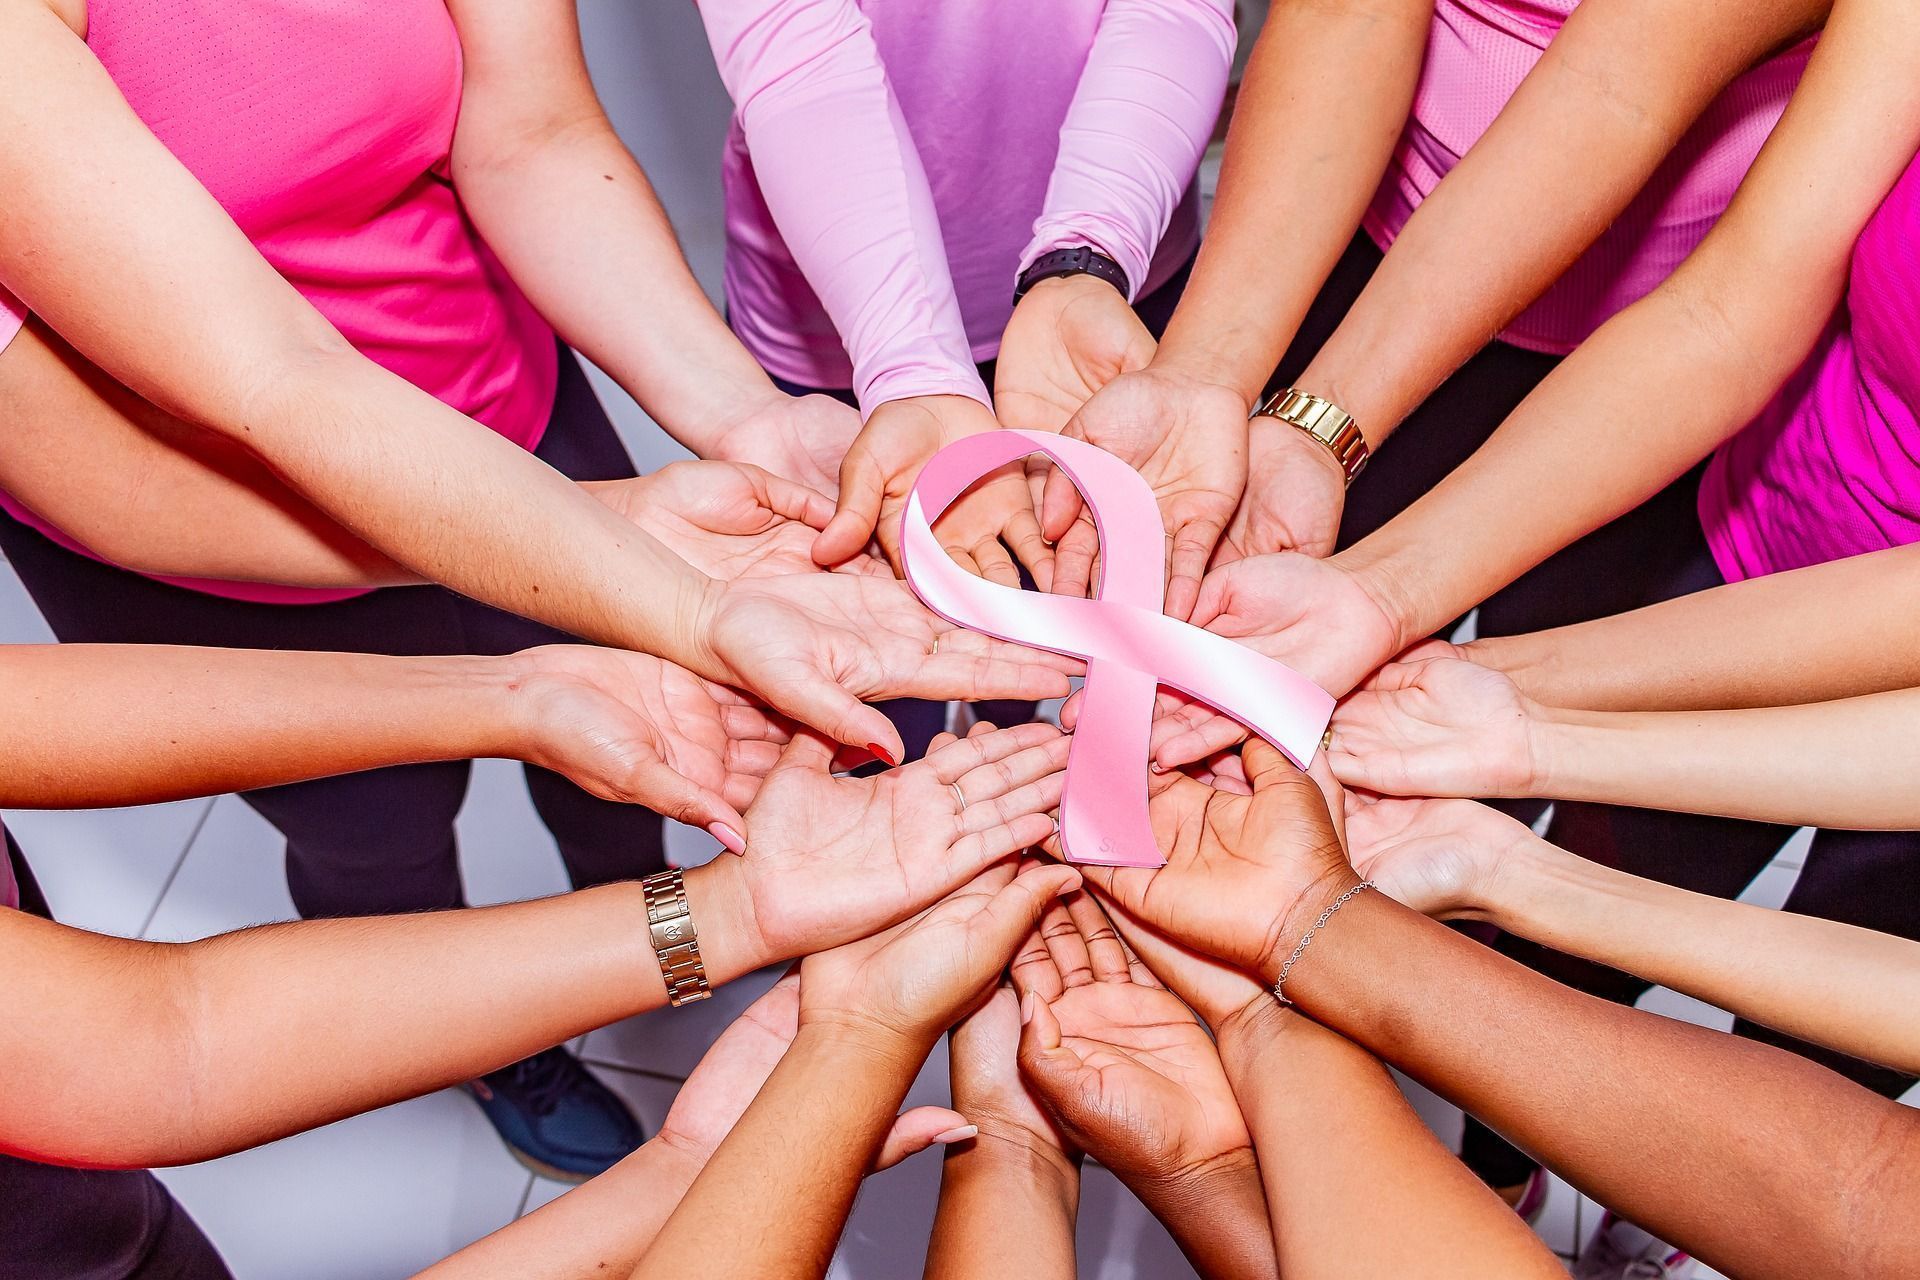 Câncer de mama: essas são algumas das mudanças físicas que os seios podem ter